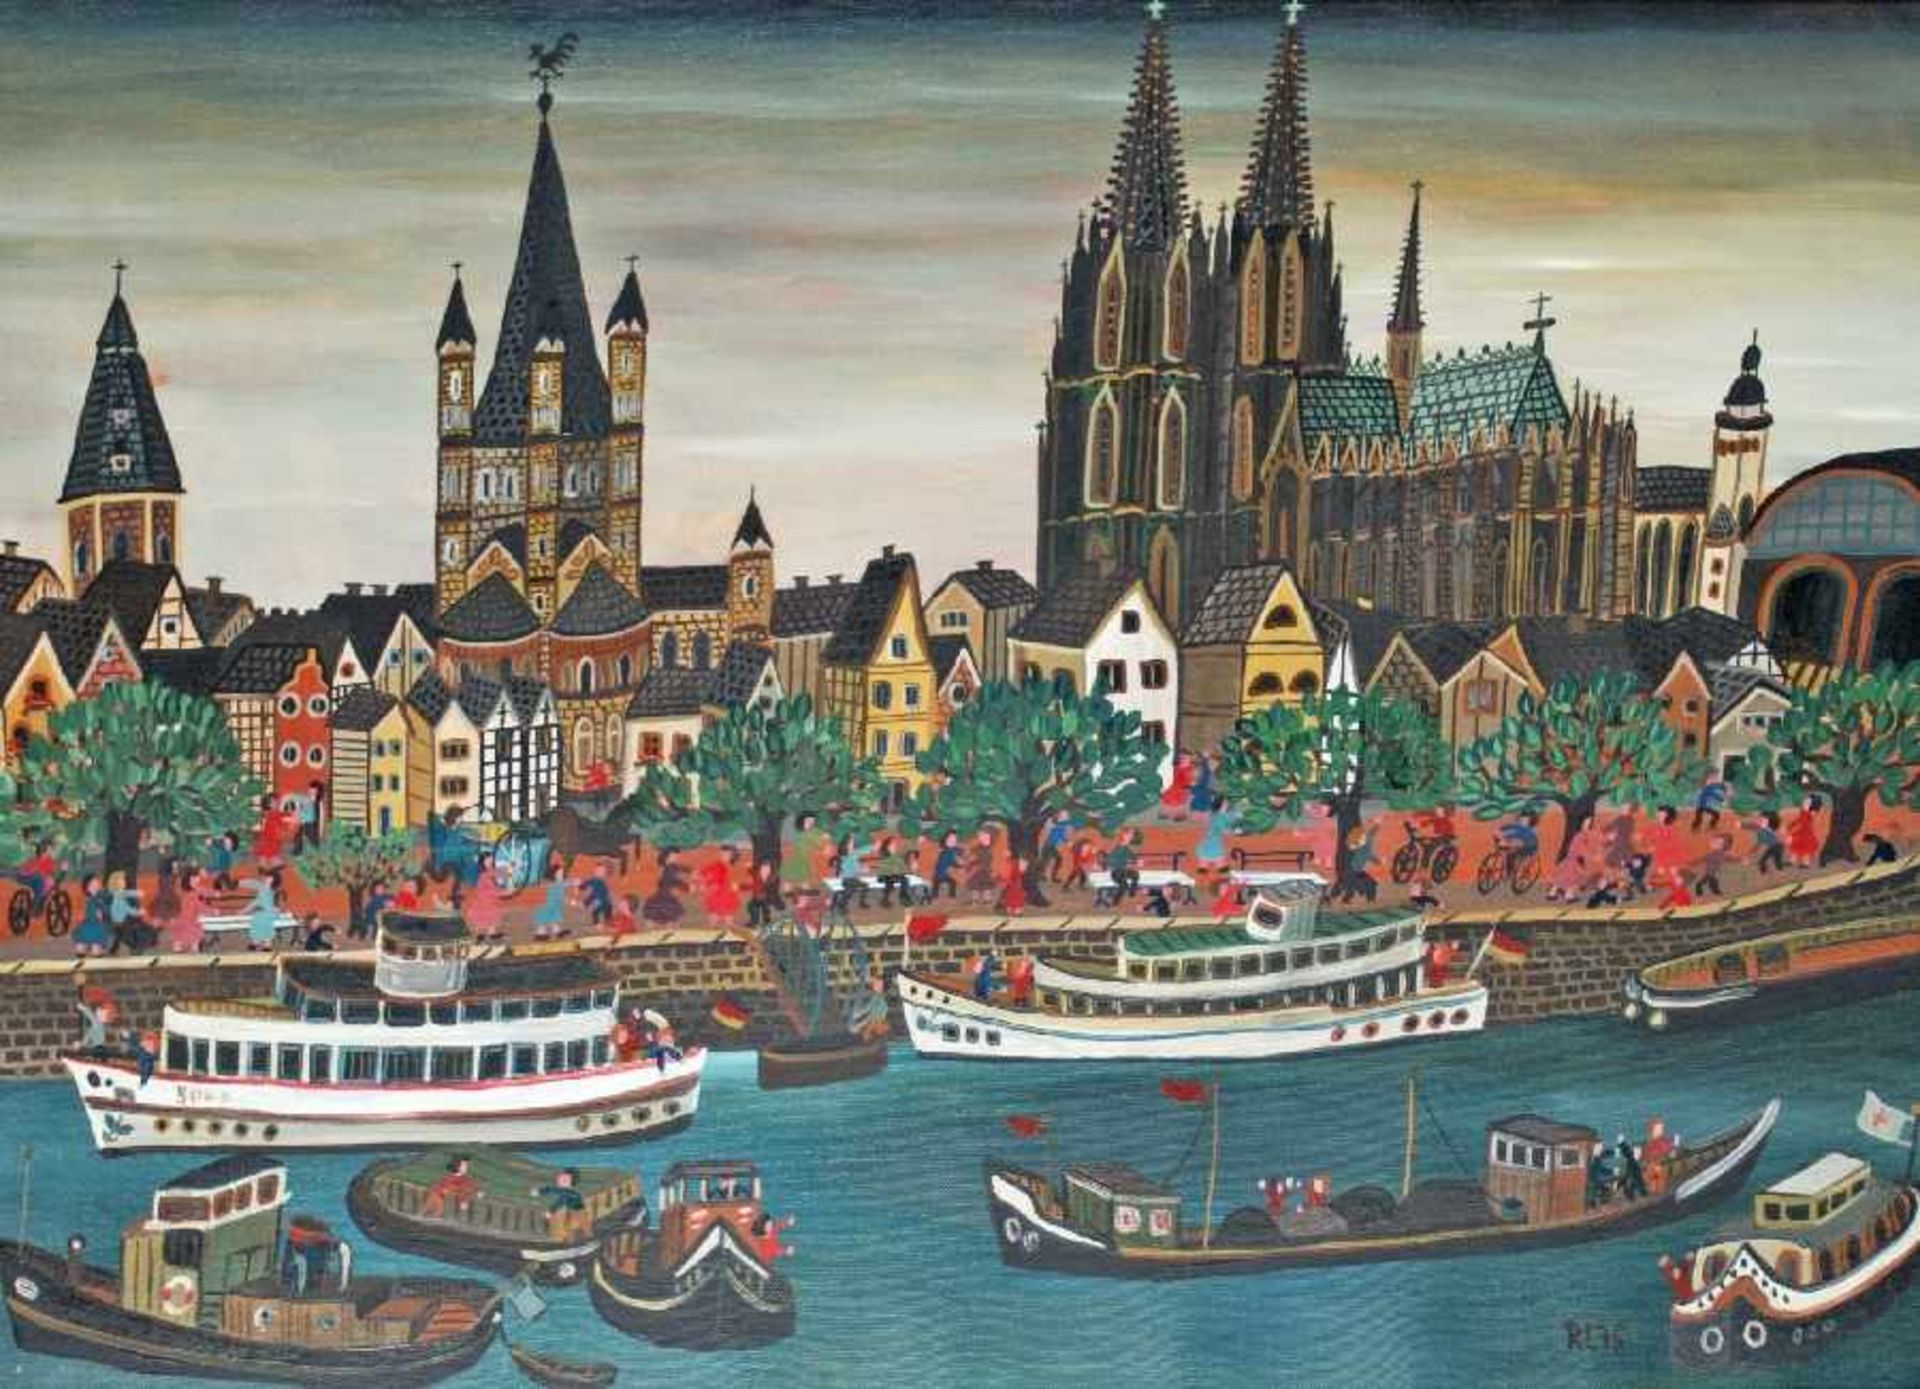 Rosemarie Landsiedel Zeitgenössische Naive Künstlerin aus Korbach. Köln Öl auf Lwd, 1975; H 45 cm, B